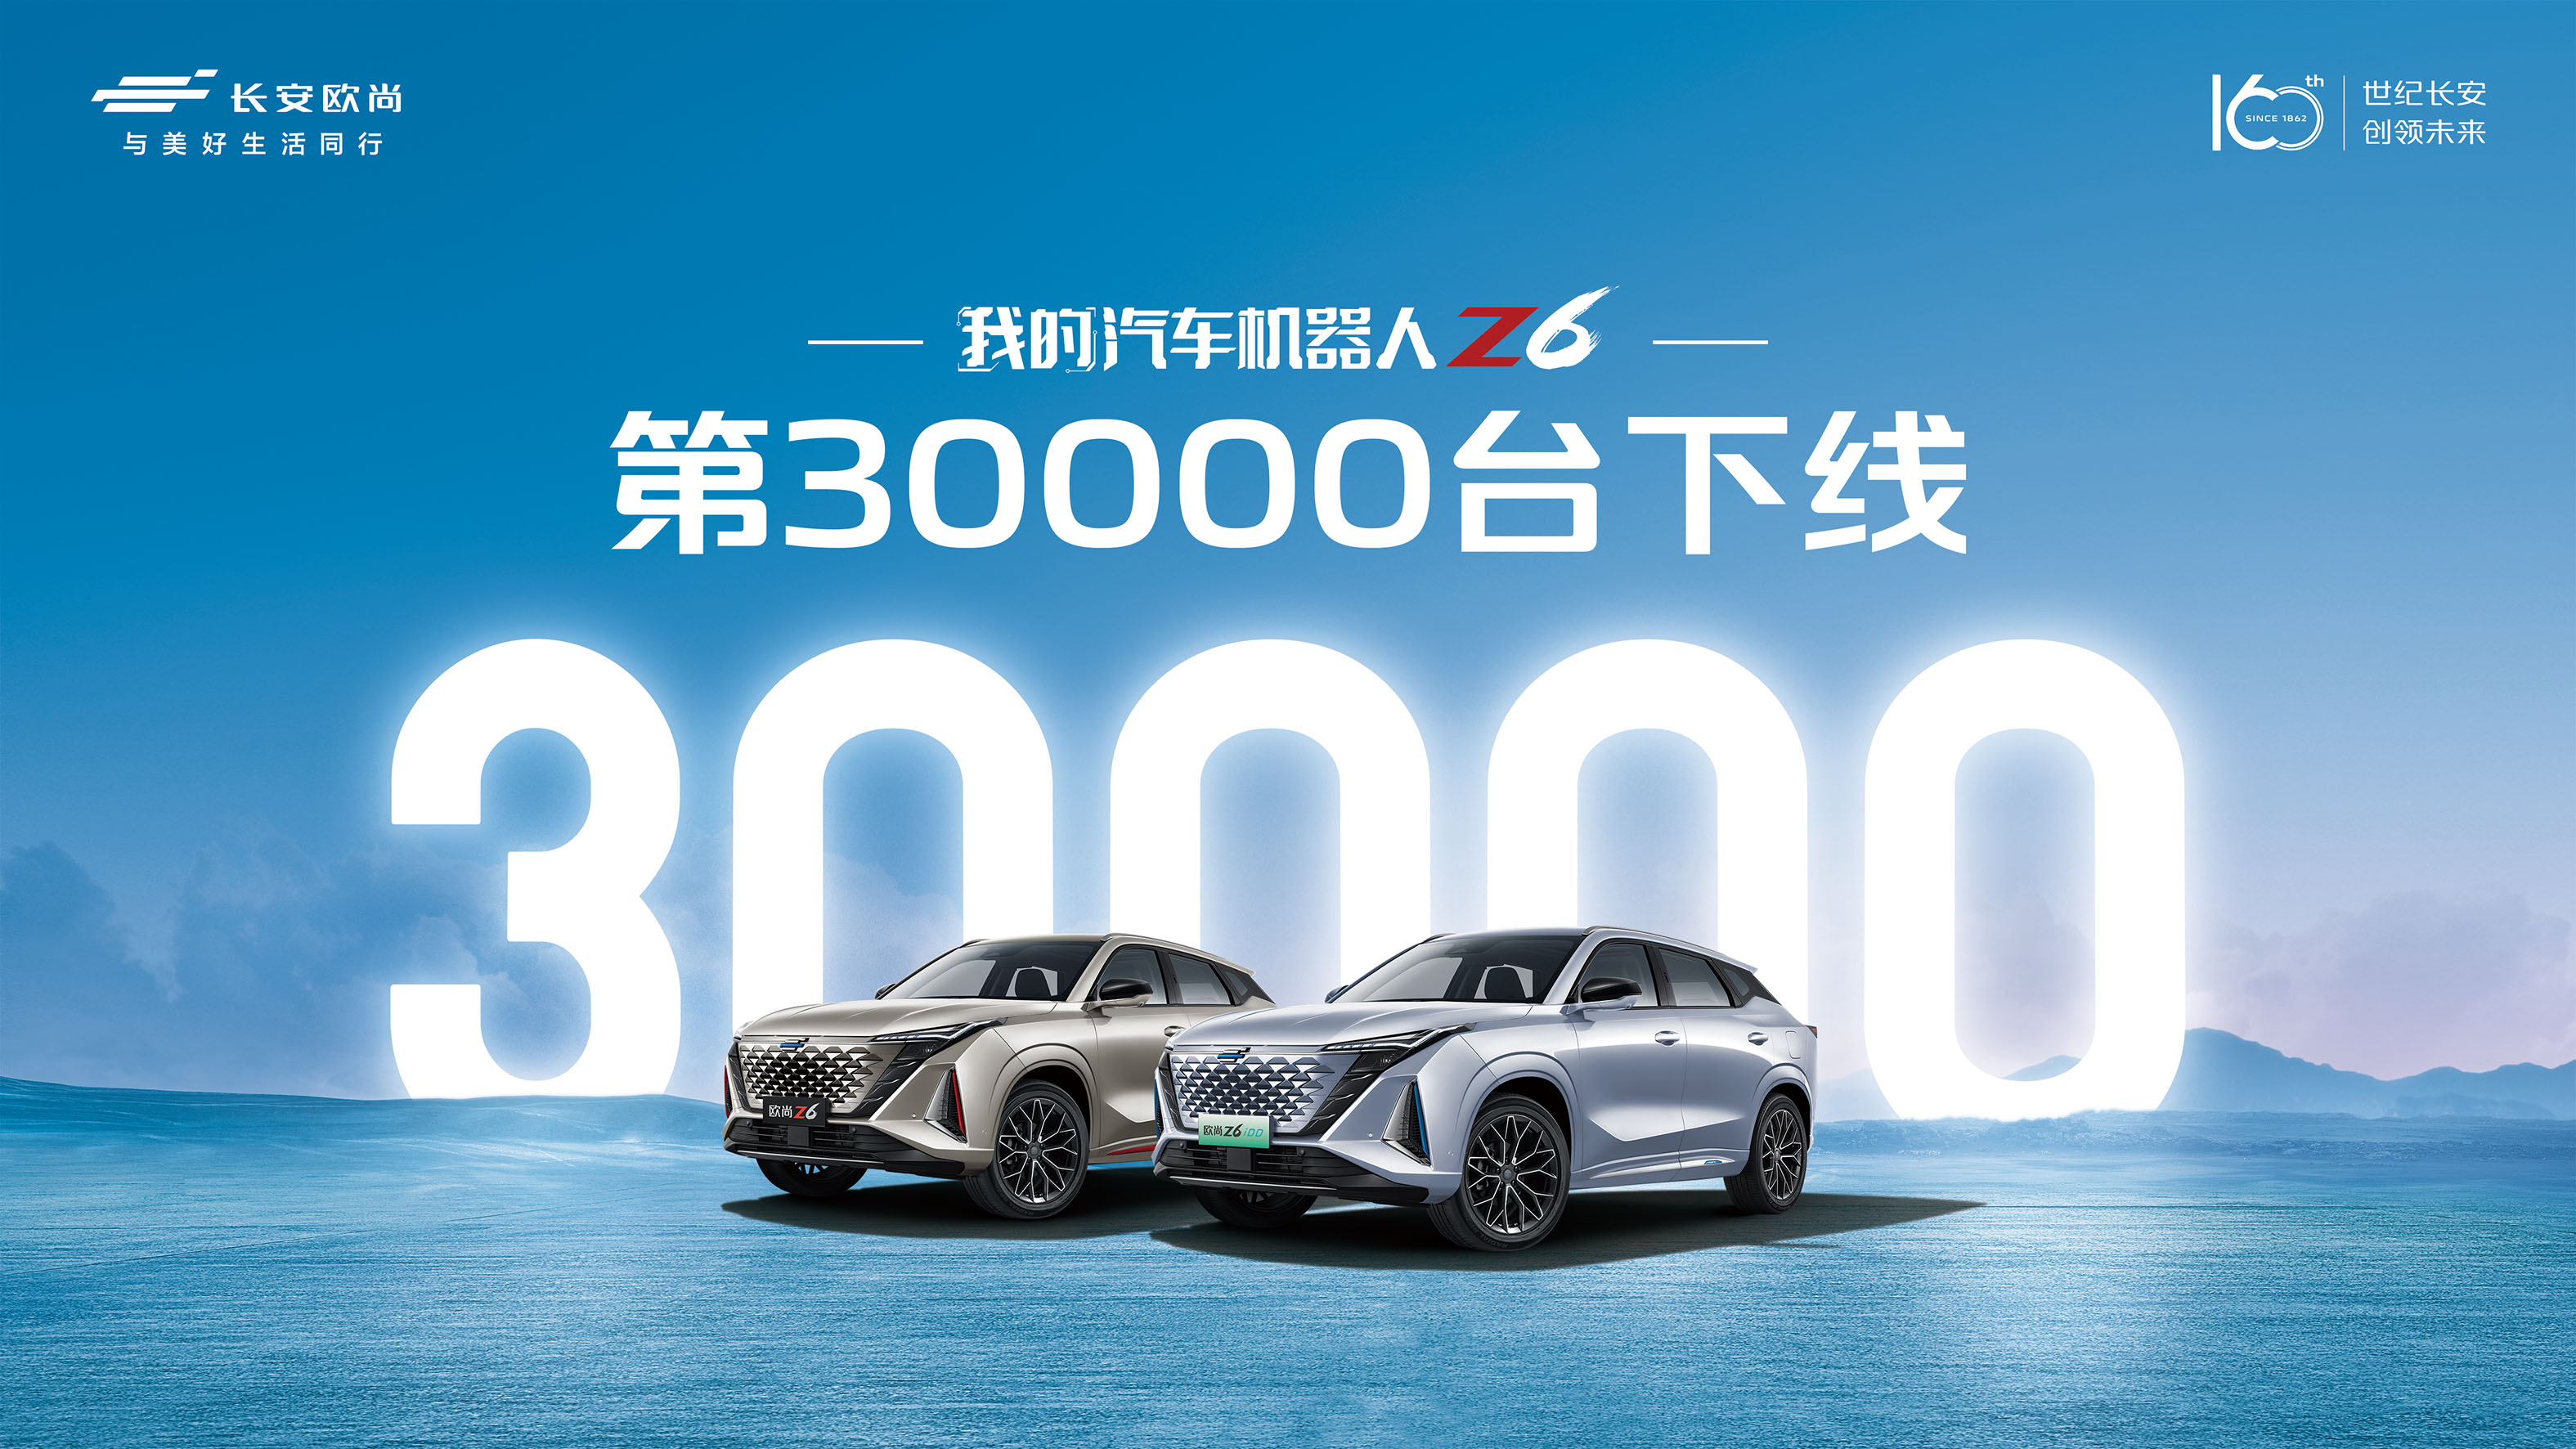 欧尚Z6 第3万台下线客户交车仪式